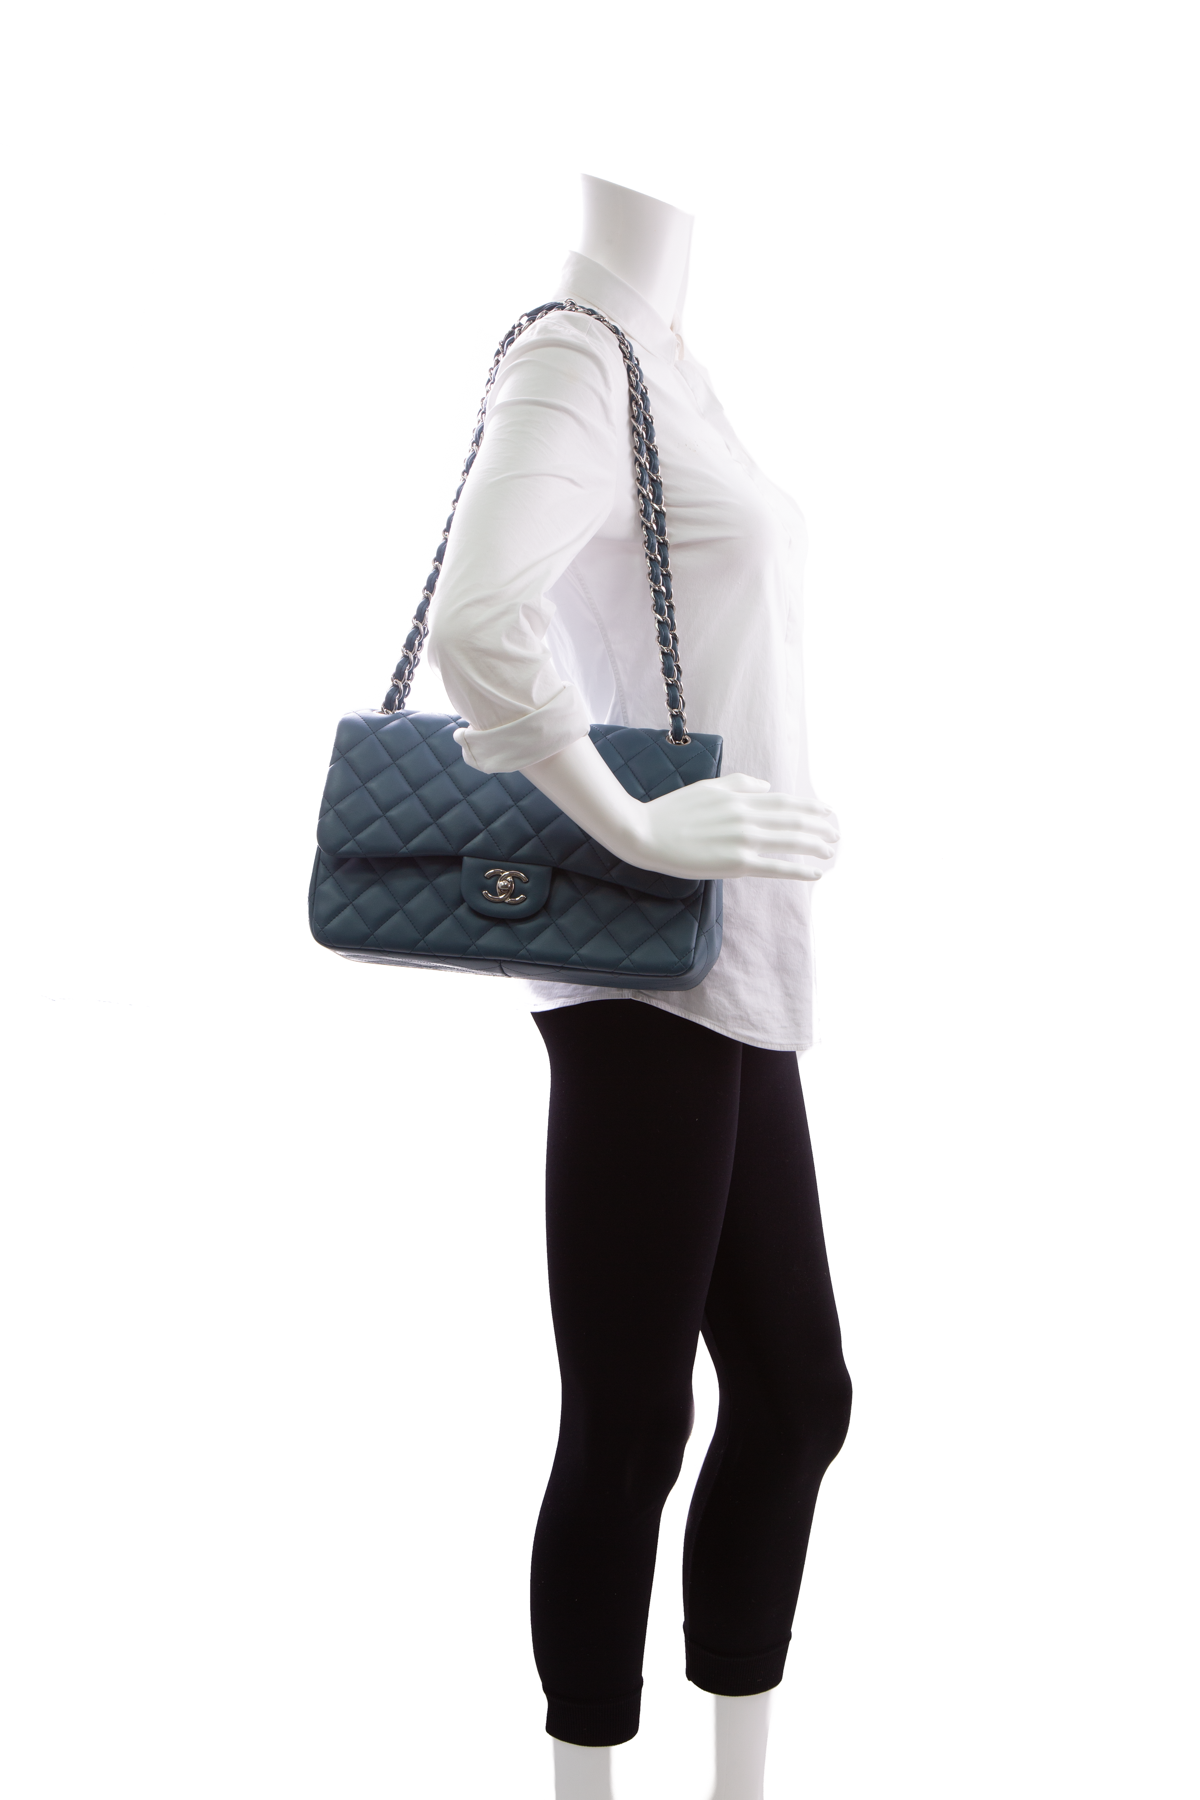 Chanel Blue Lambskin Double Flap Bag